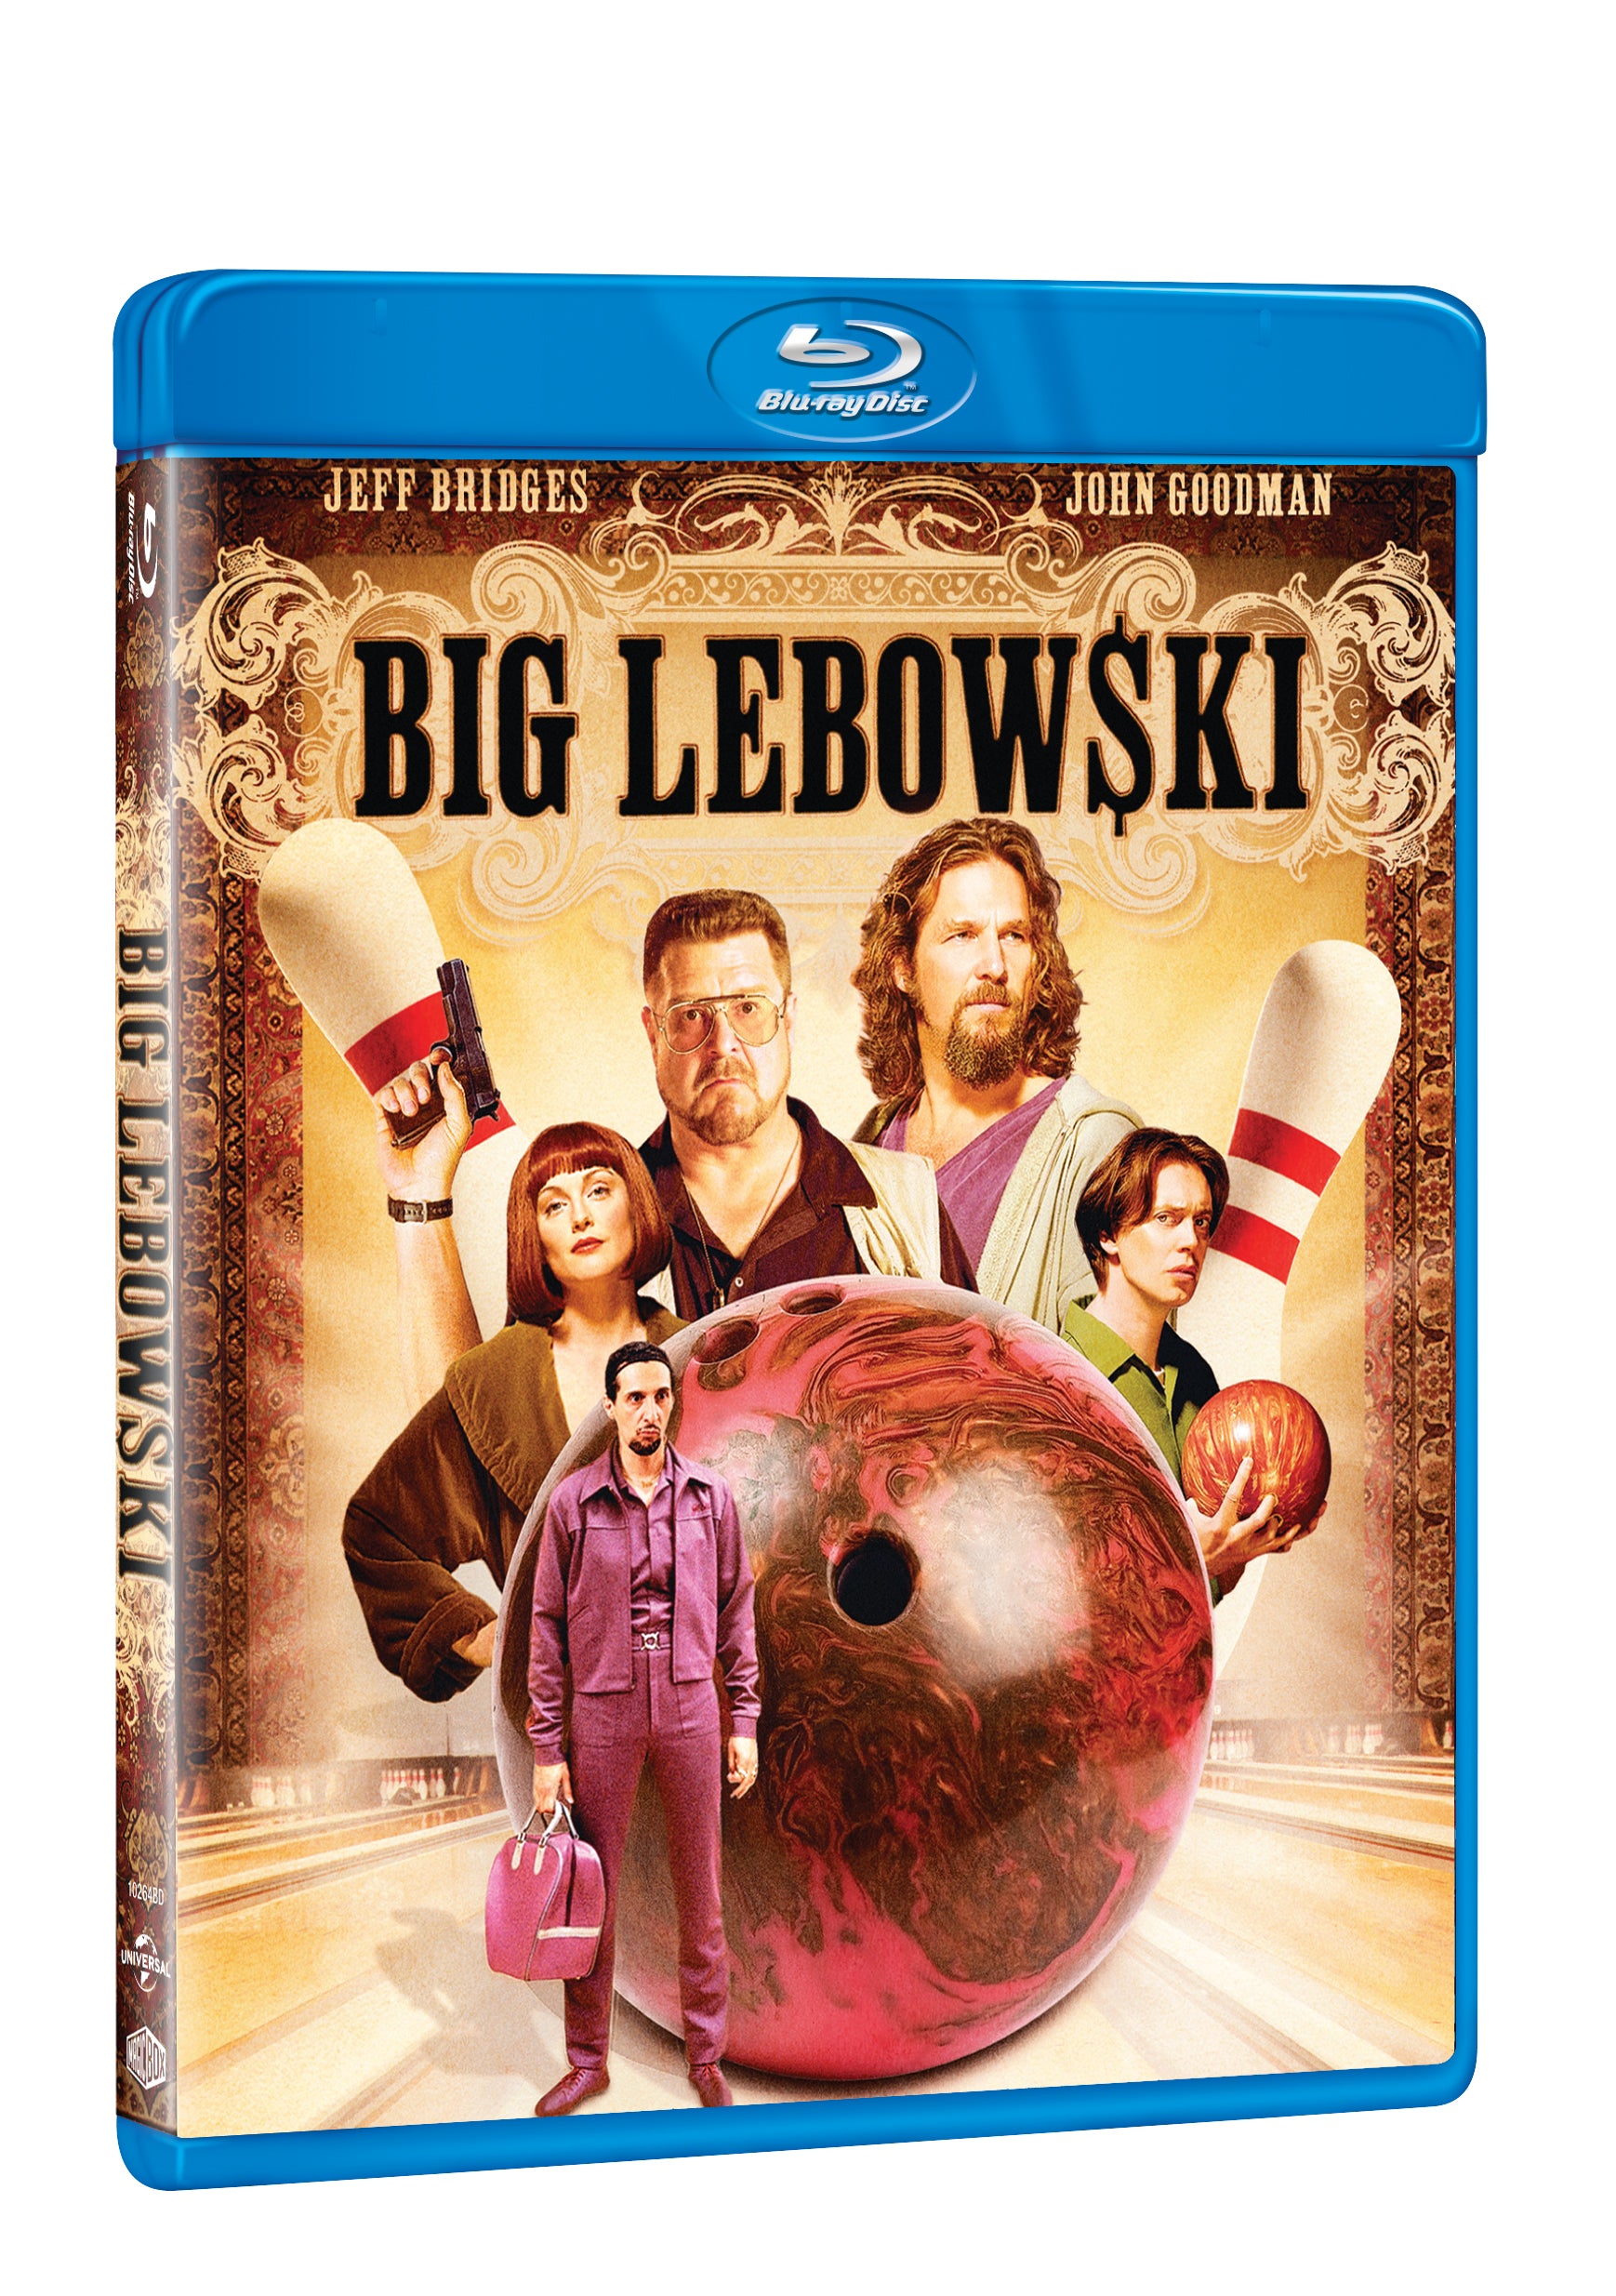 Big Lebowski BD / The Big Lebowski - Czech version